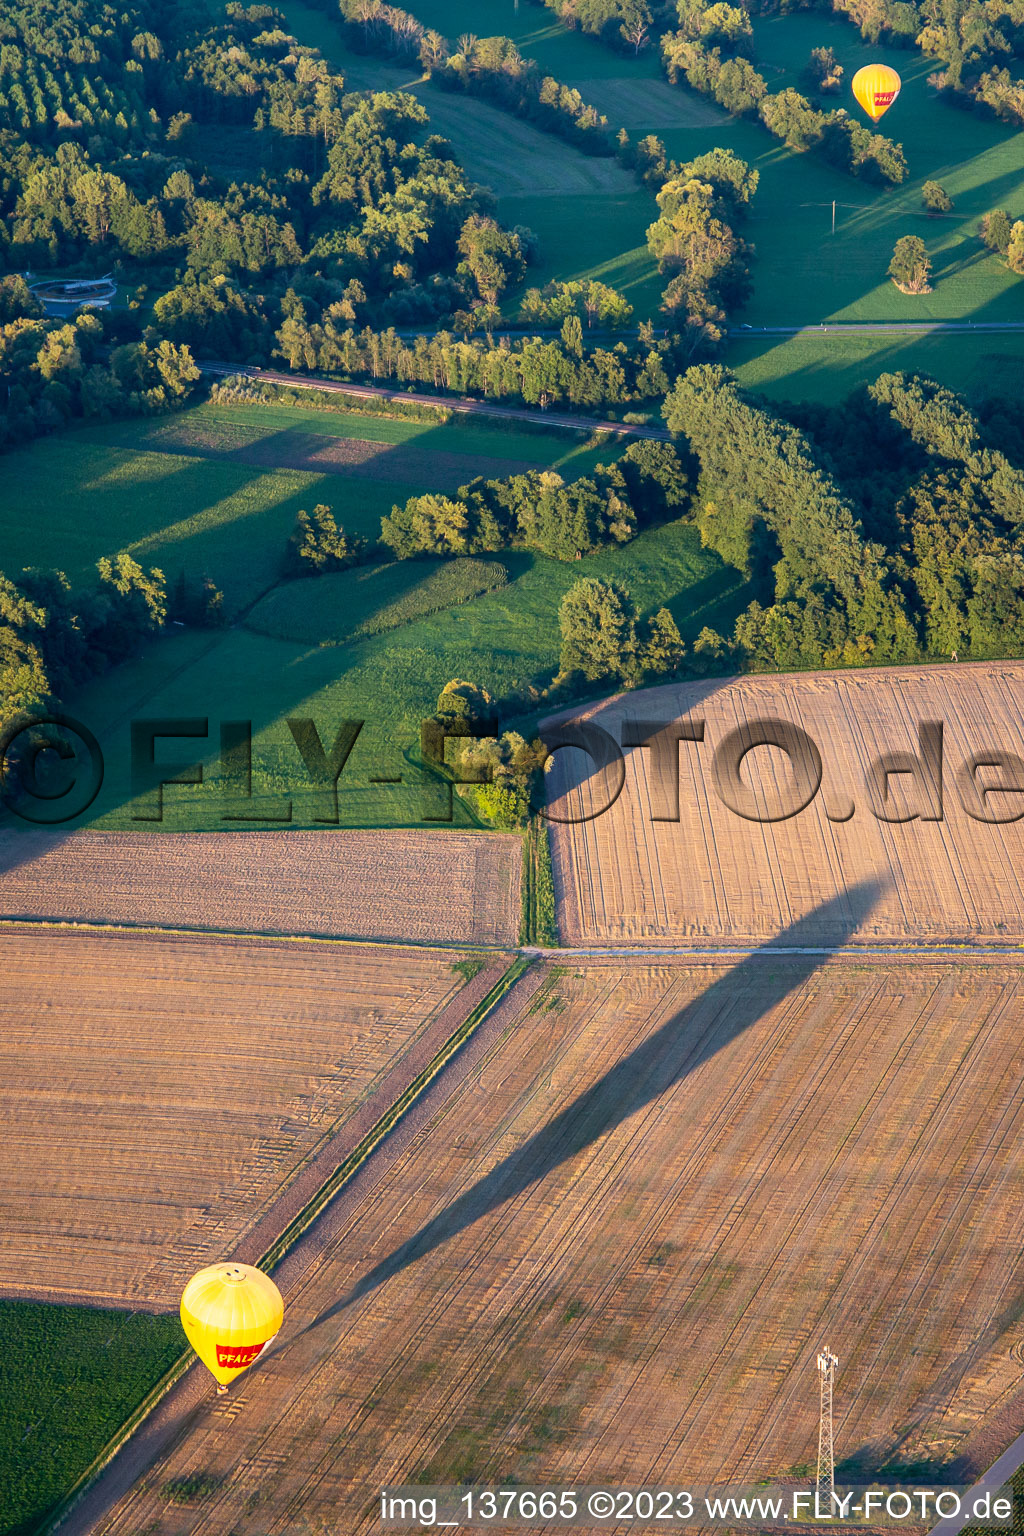 Luftbild von PfalzGas Heisluftballone gelandet in Billigheim-Ingenheim im Bundesland Rheinland-Pfalz, Deutschland